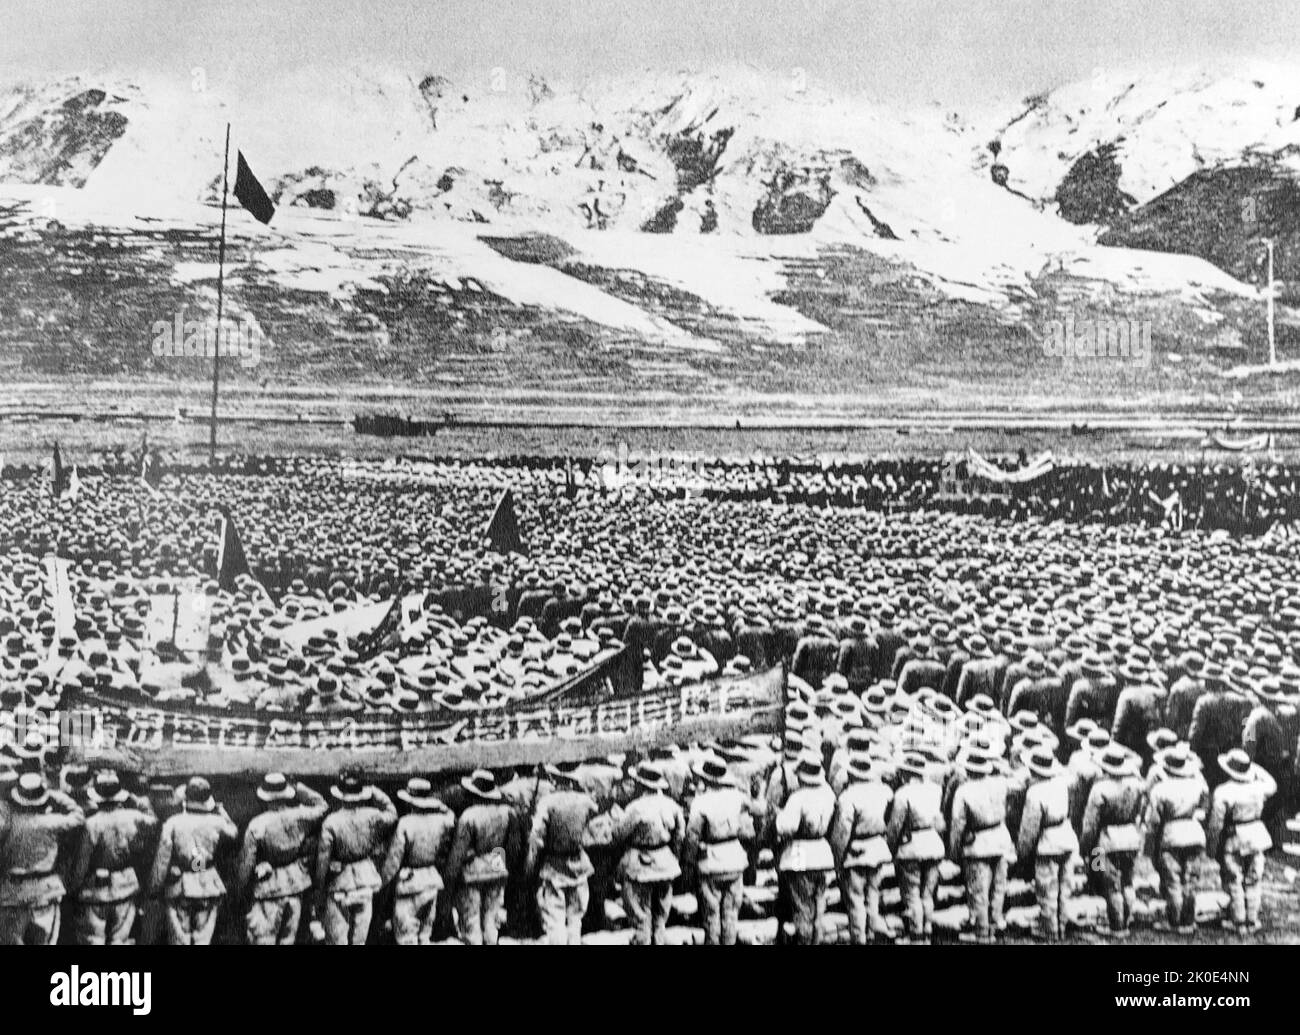 Les troupes chinoises se sont réunies pour l'invasion du Tibet par le gouvernement communiste chinois en 1950. Affirmer que le Tibet n’est pas un pays indépendant mais simplement une partie de la Chine. L'armée tibétaine, petite et mal équipée, n'a pas été en mesure de fournir une résistance efficace contre l'ALP (Armée populaire de libération) et a été complètement tuée ou capturée. Banque D'Images